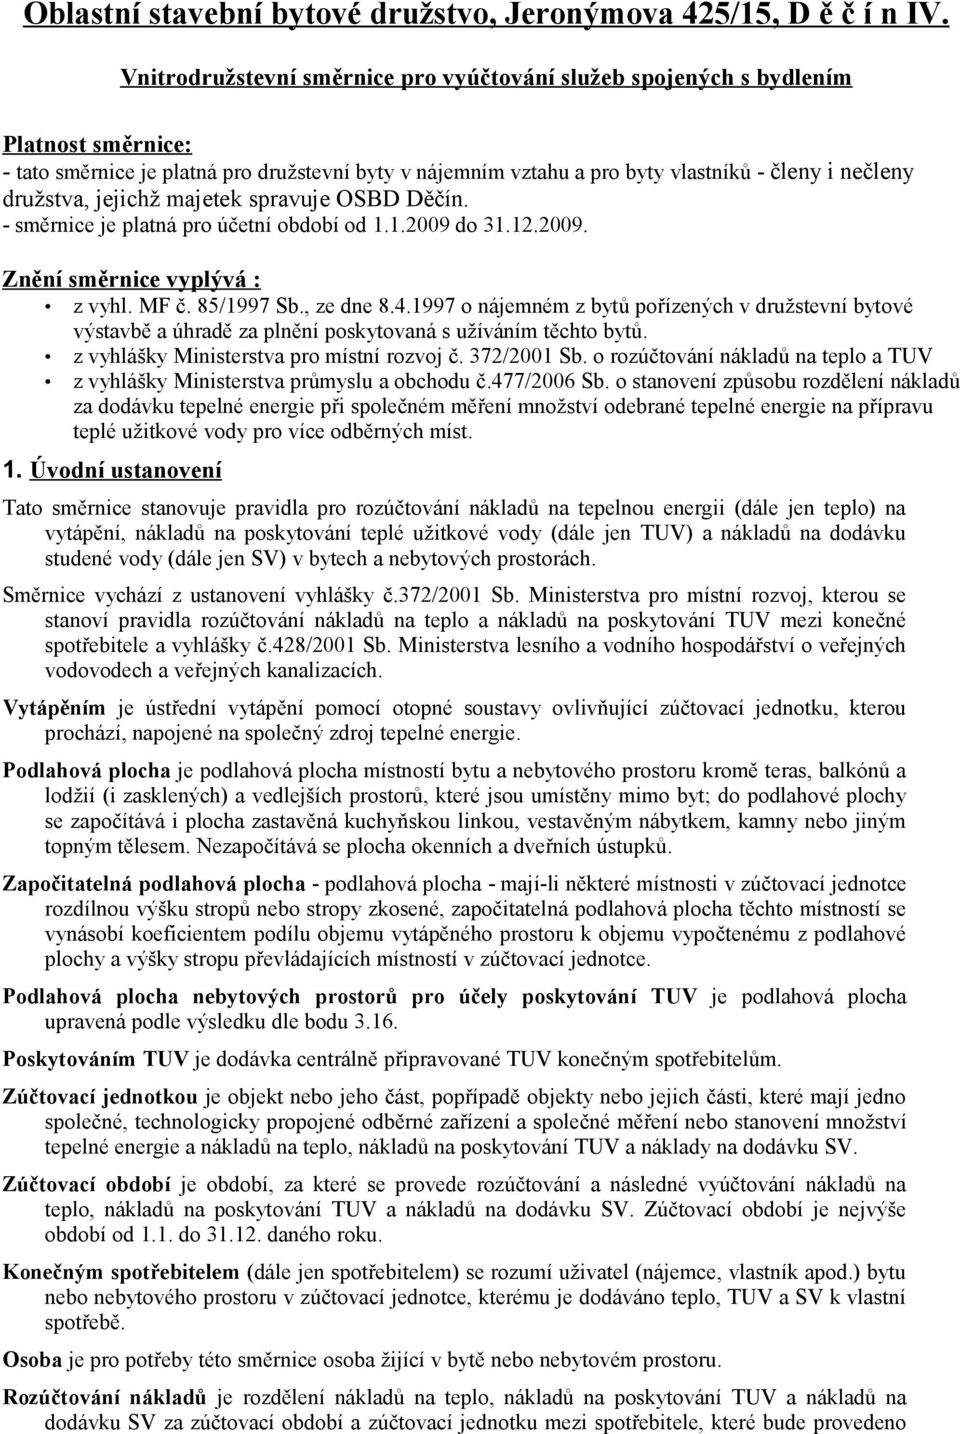 družstva, jejichž majetek spravuje OSBD Děčín. - směrnice je platná pro účetní období od 1.1.2009 do 31.12.2009. Znění směrnice vyplývá : z vyhl. MF č. 85/1997 Sb., ze dne 8.4.